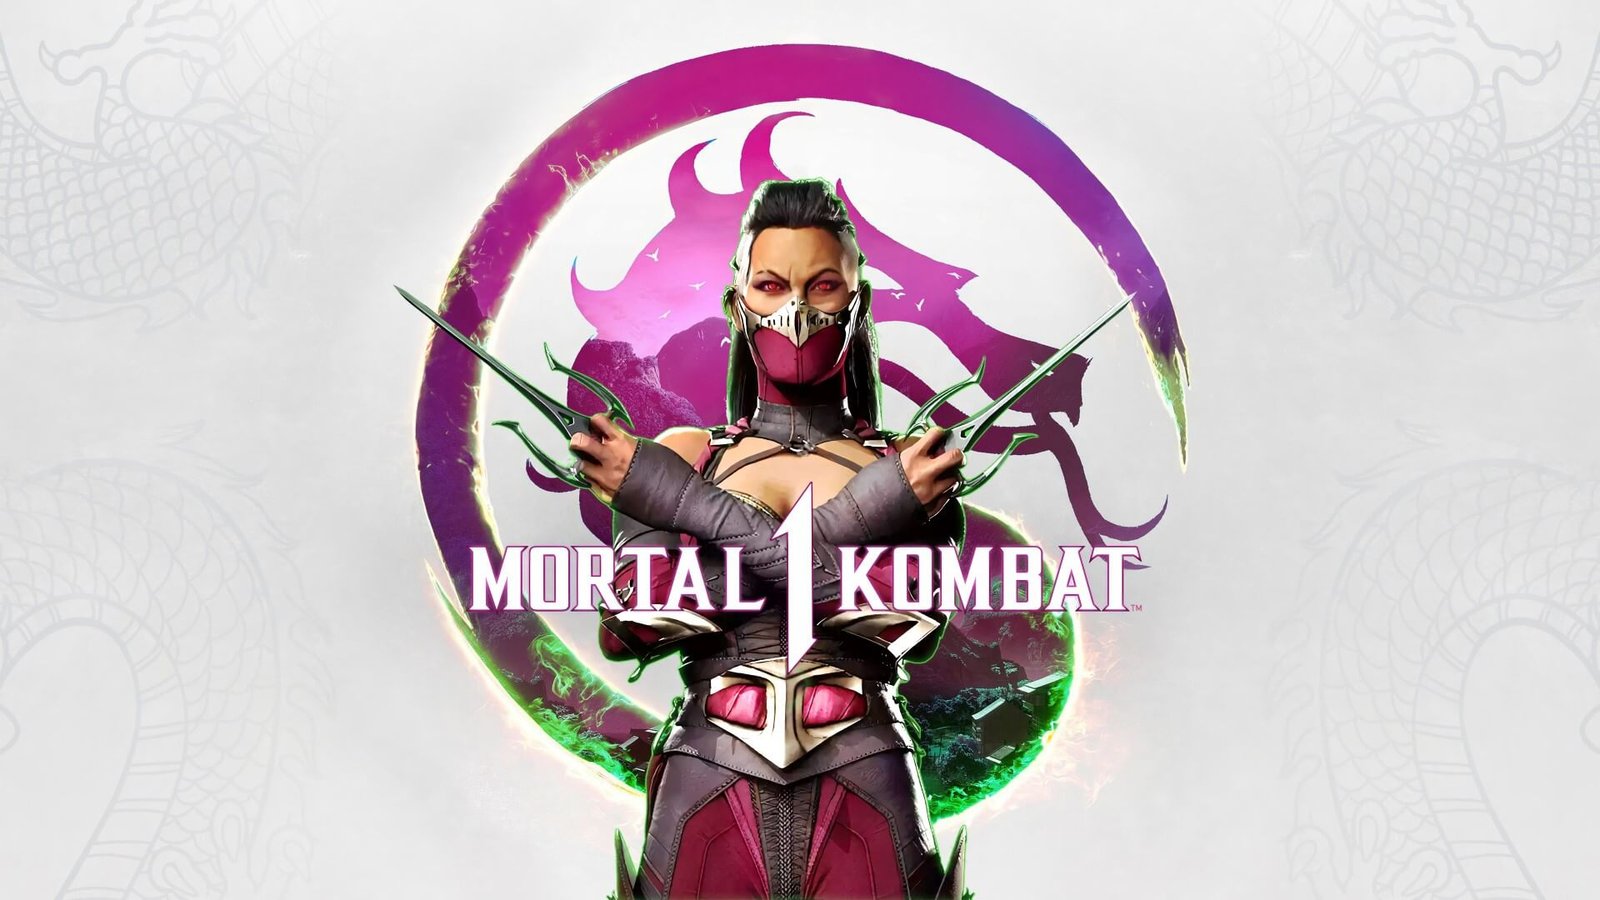 Mortal Kombat 1 liberado para testes faz parte de nossa lista de promoções